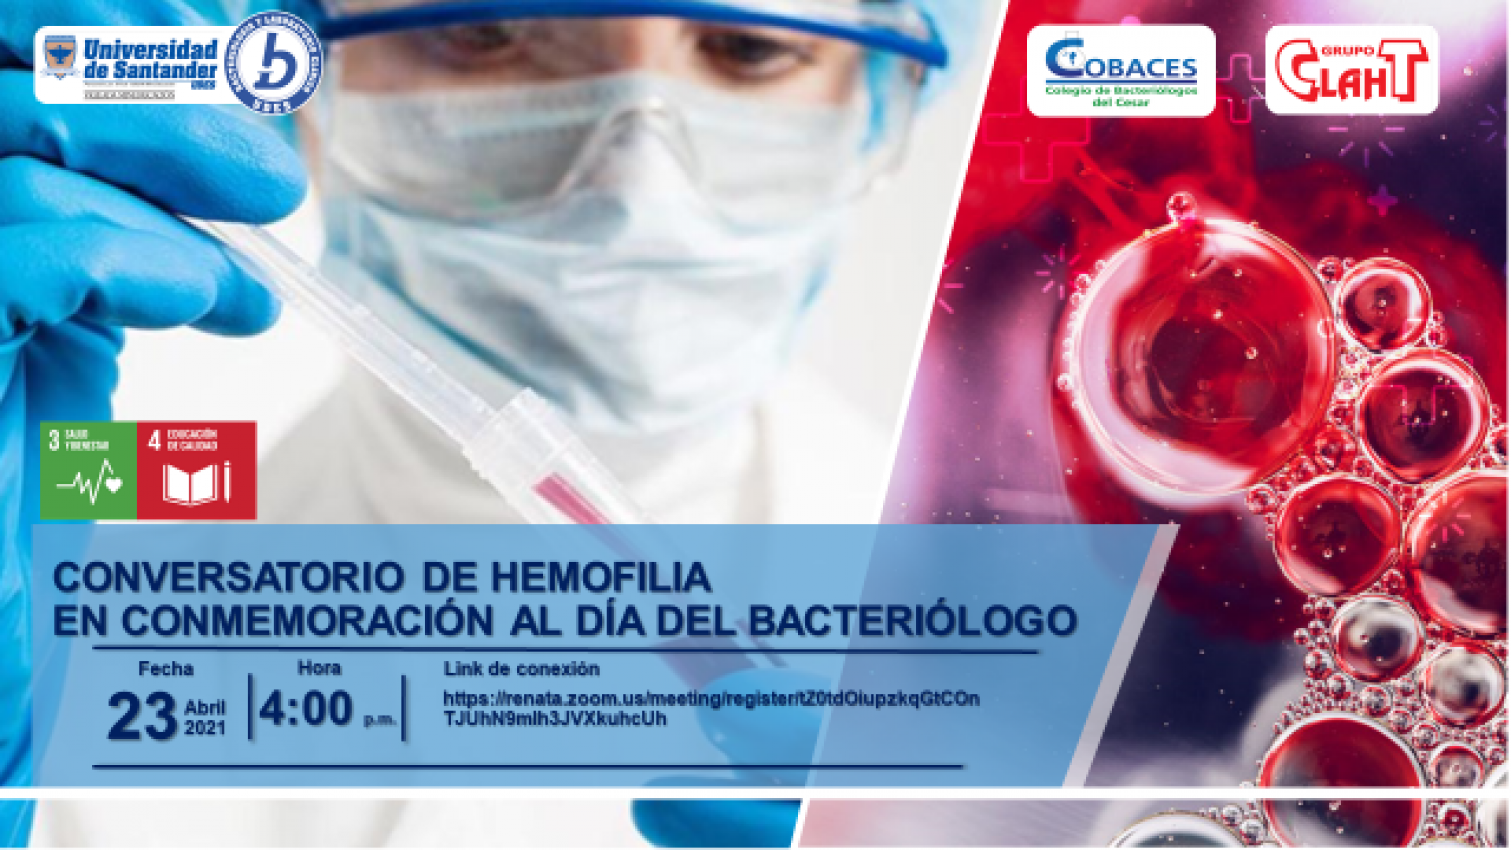 Conversatorio de "Hemofilia" en Conmemoración al Día del Bacteriólogo